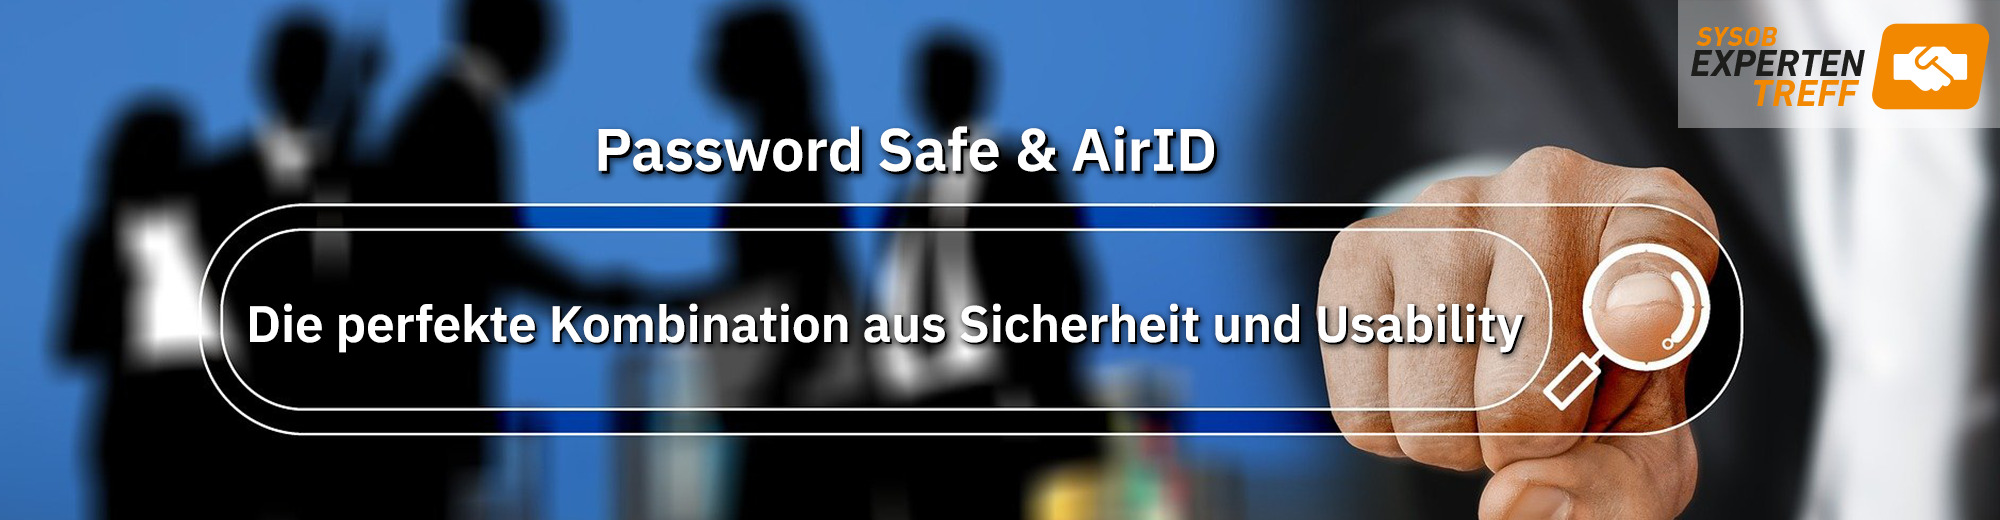 Password Safe und AirID